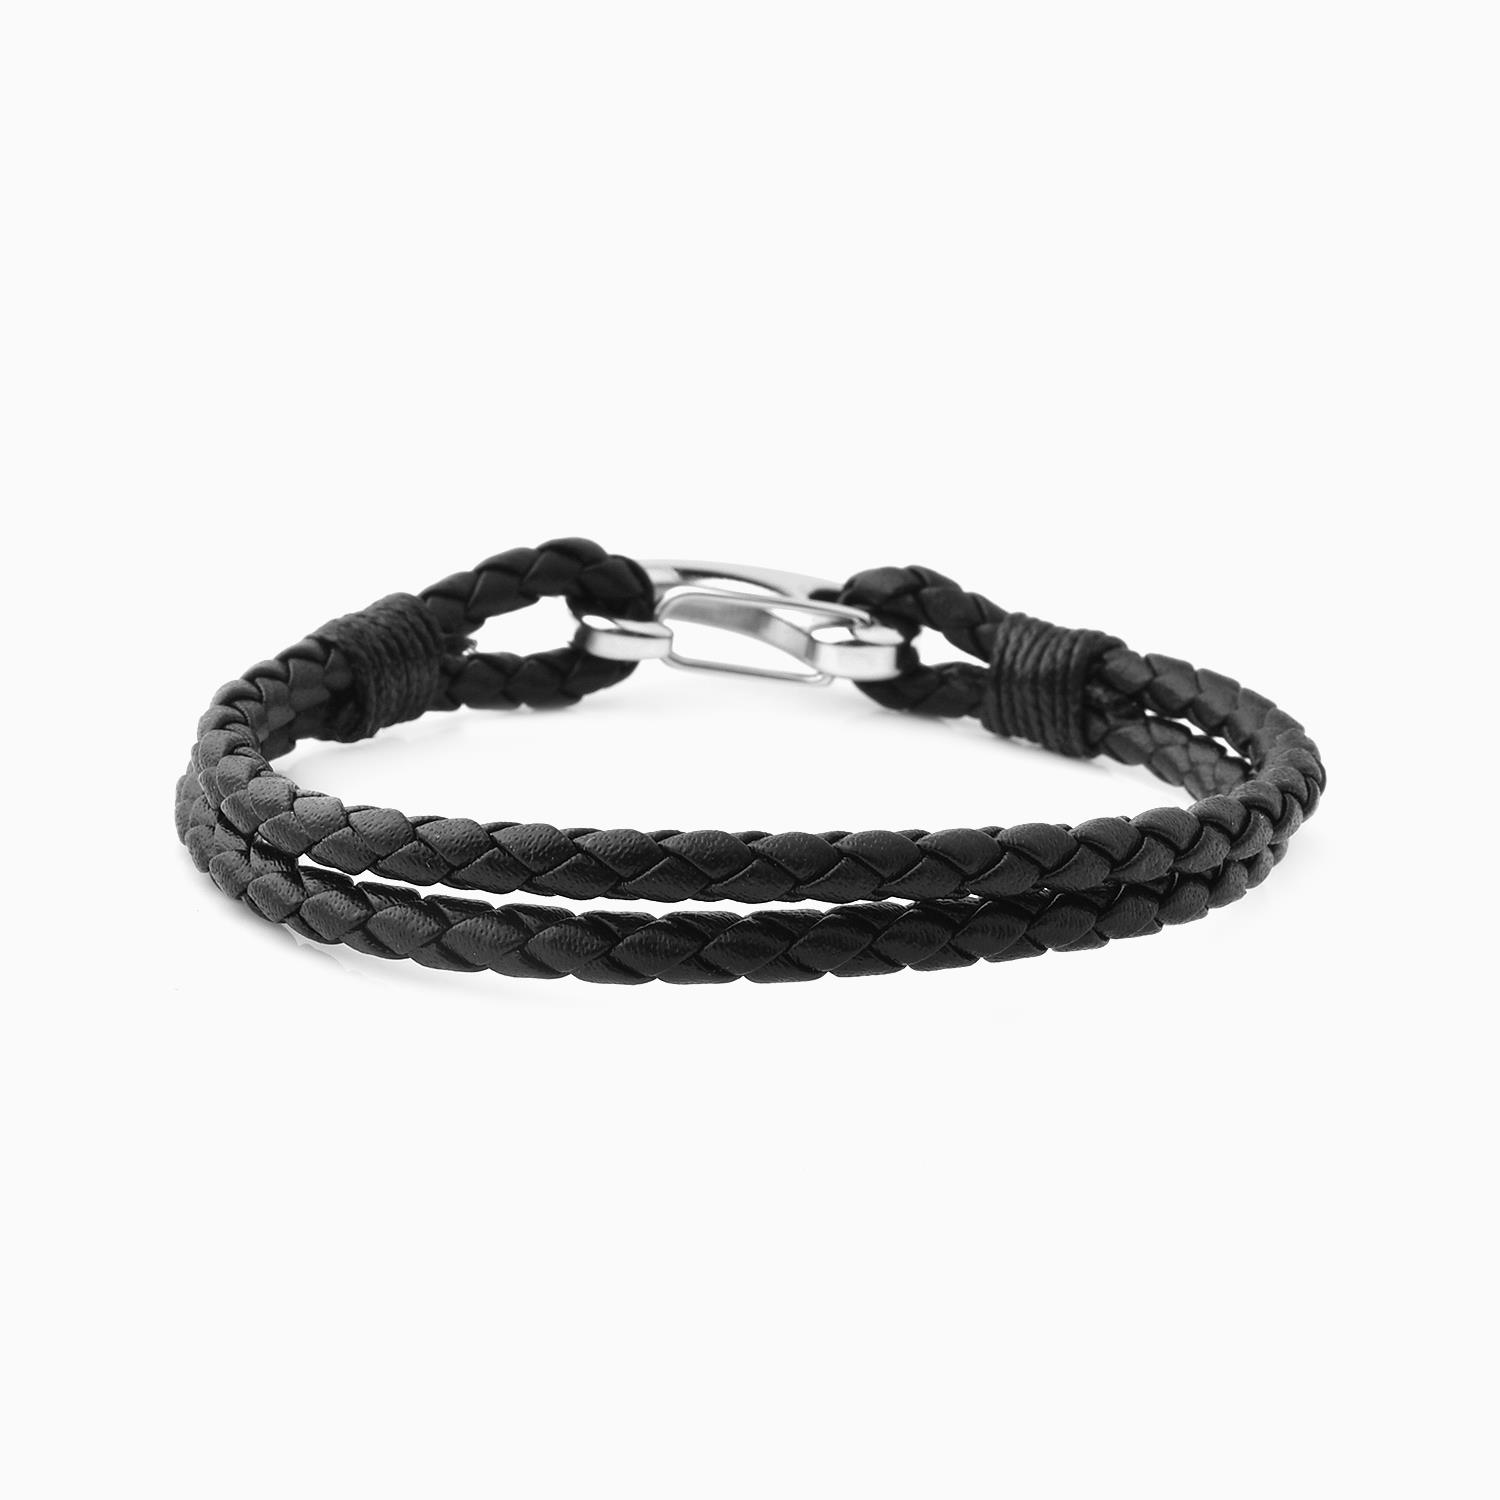 Louis Vuitton Space Bracelet on Black Cord